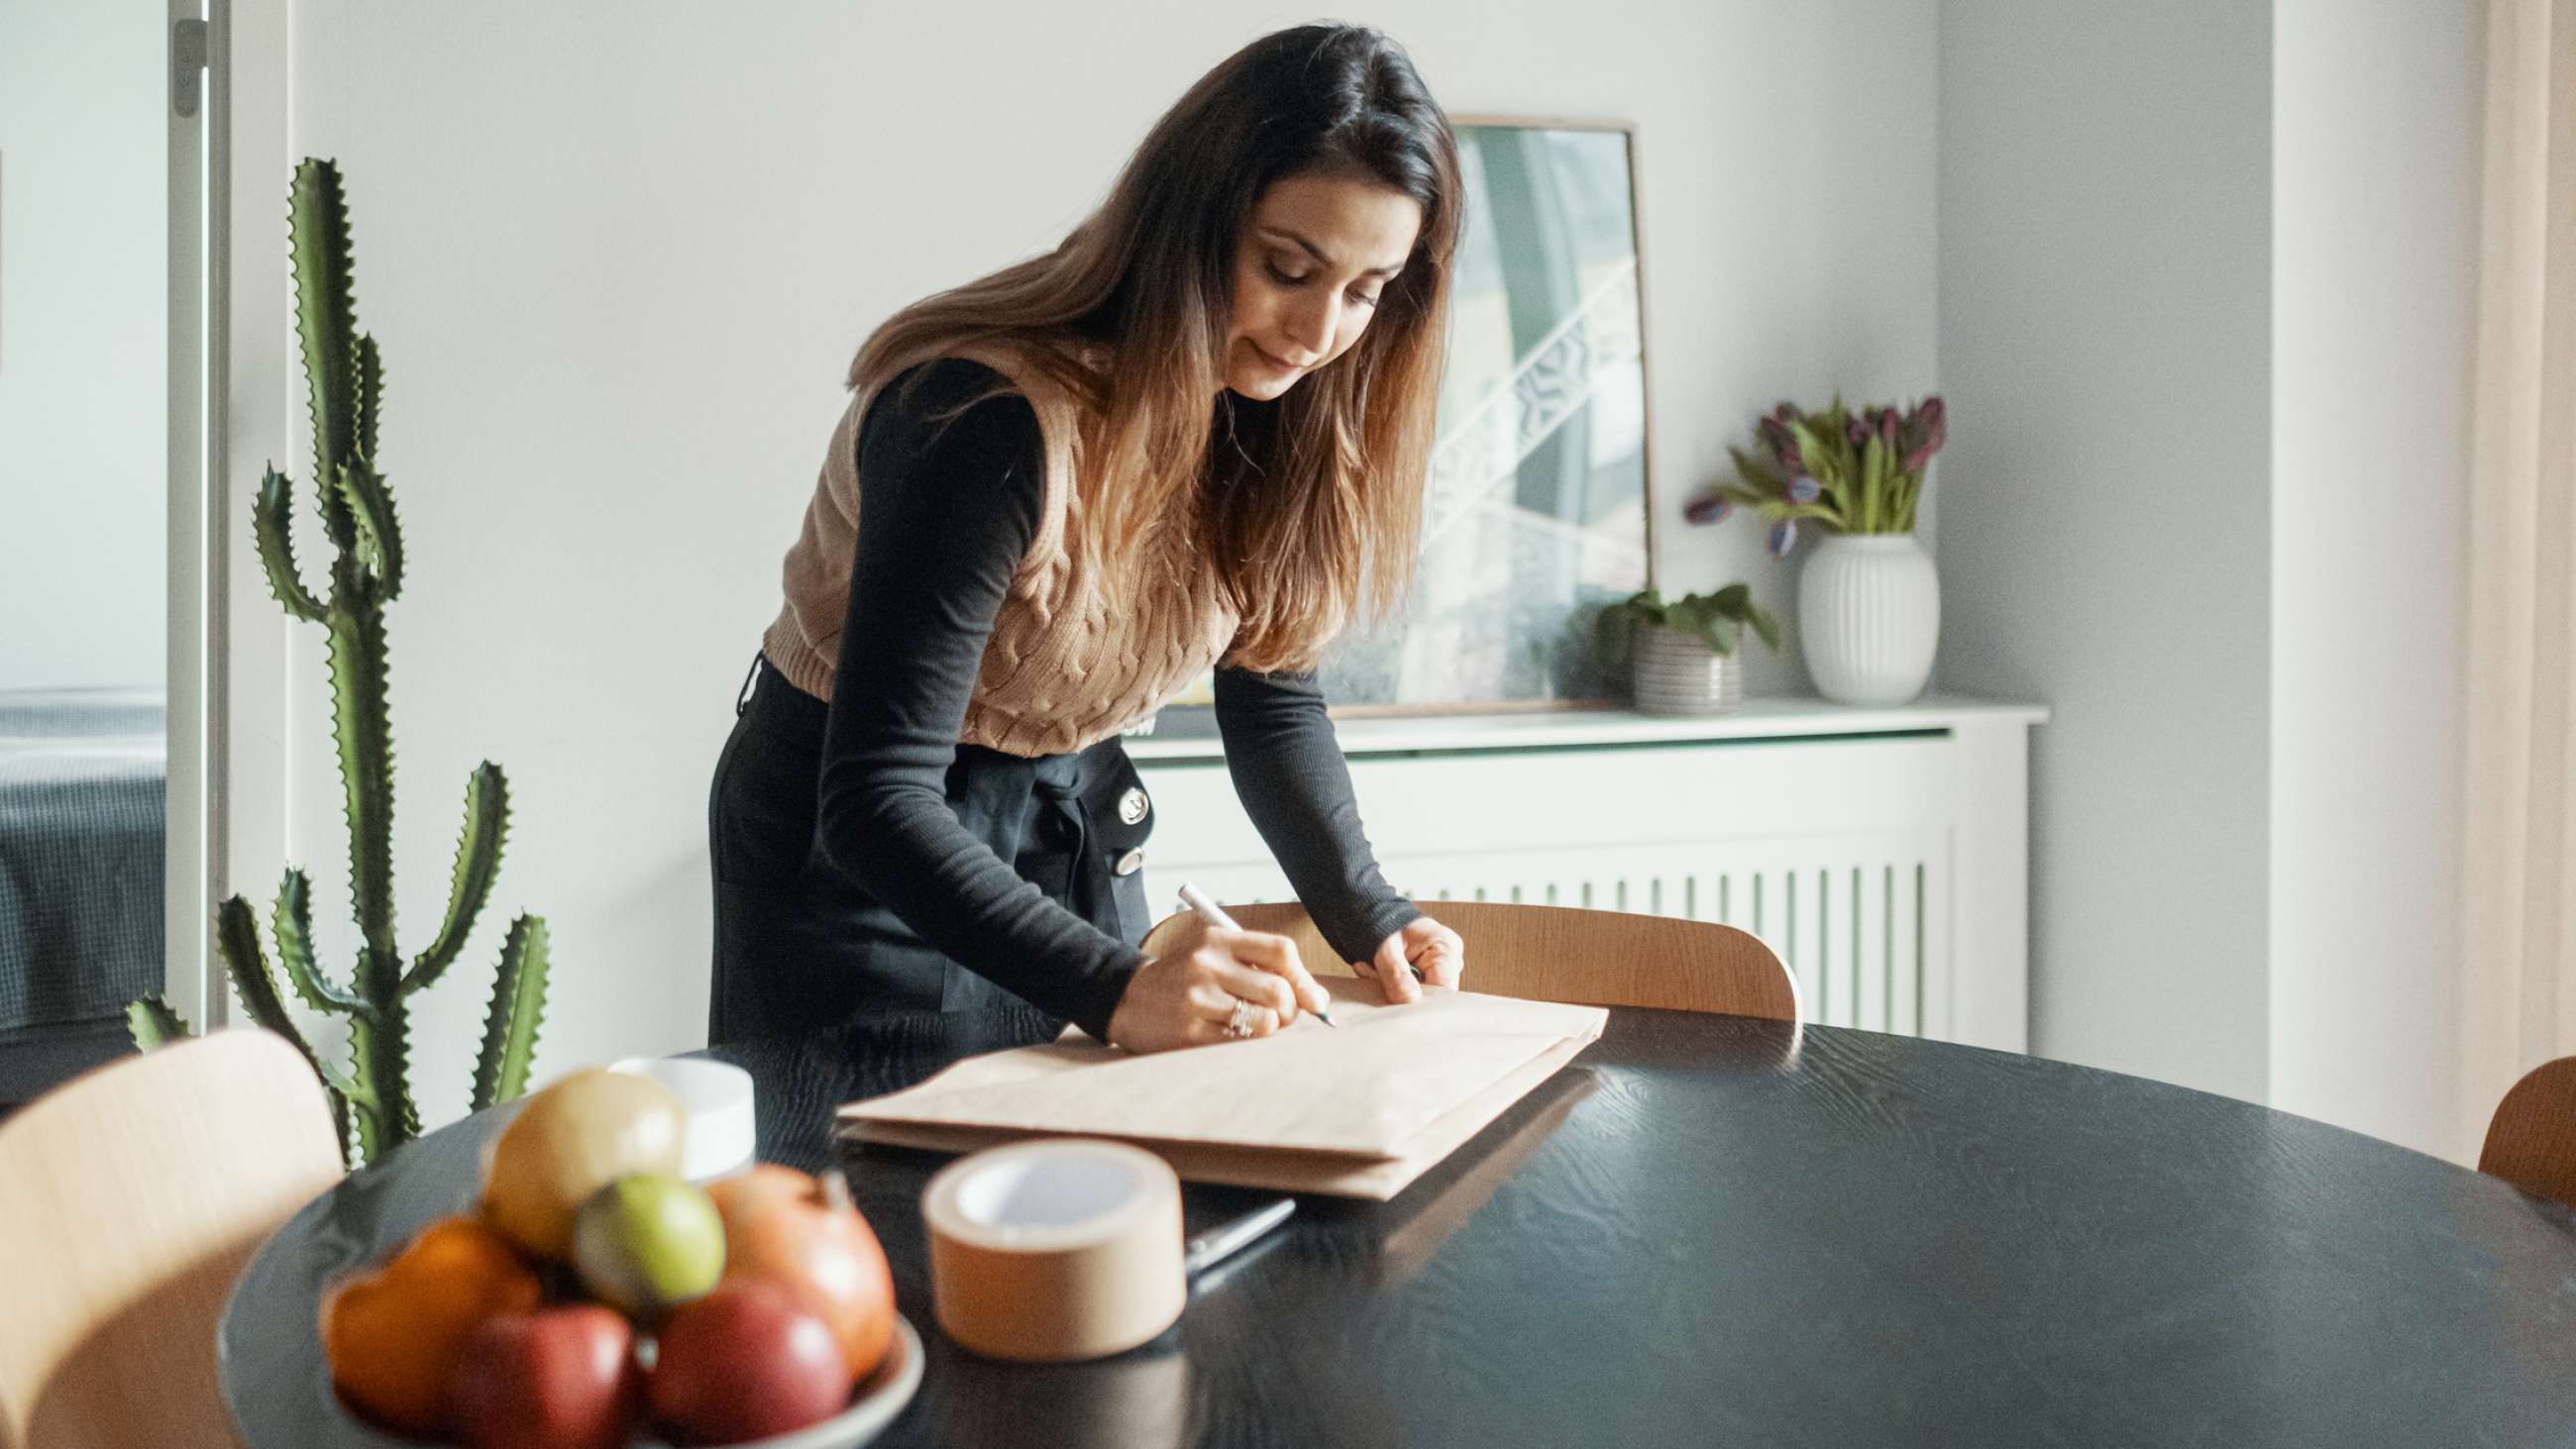 En kvinde læner sig over et bord og skriver på en pakke.